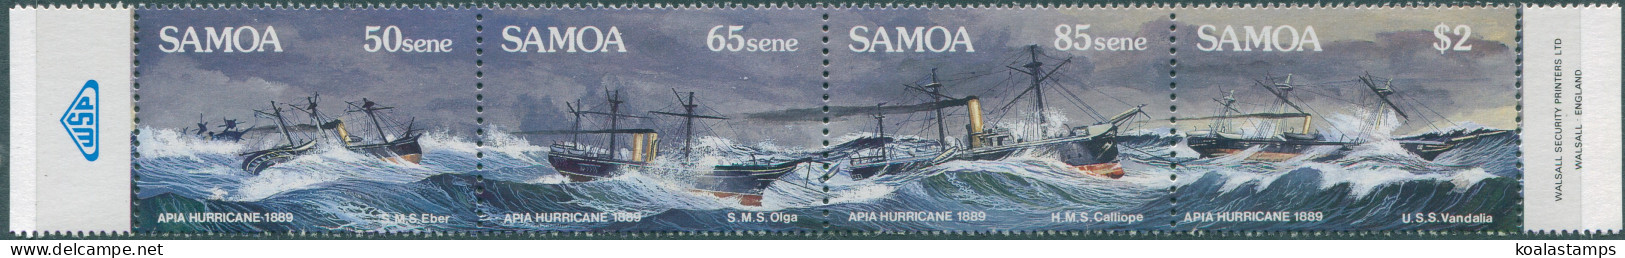 Samoa 1989 SG822-825 Apia Hurricane Set MNH - Samoa